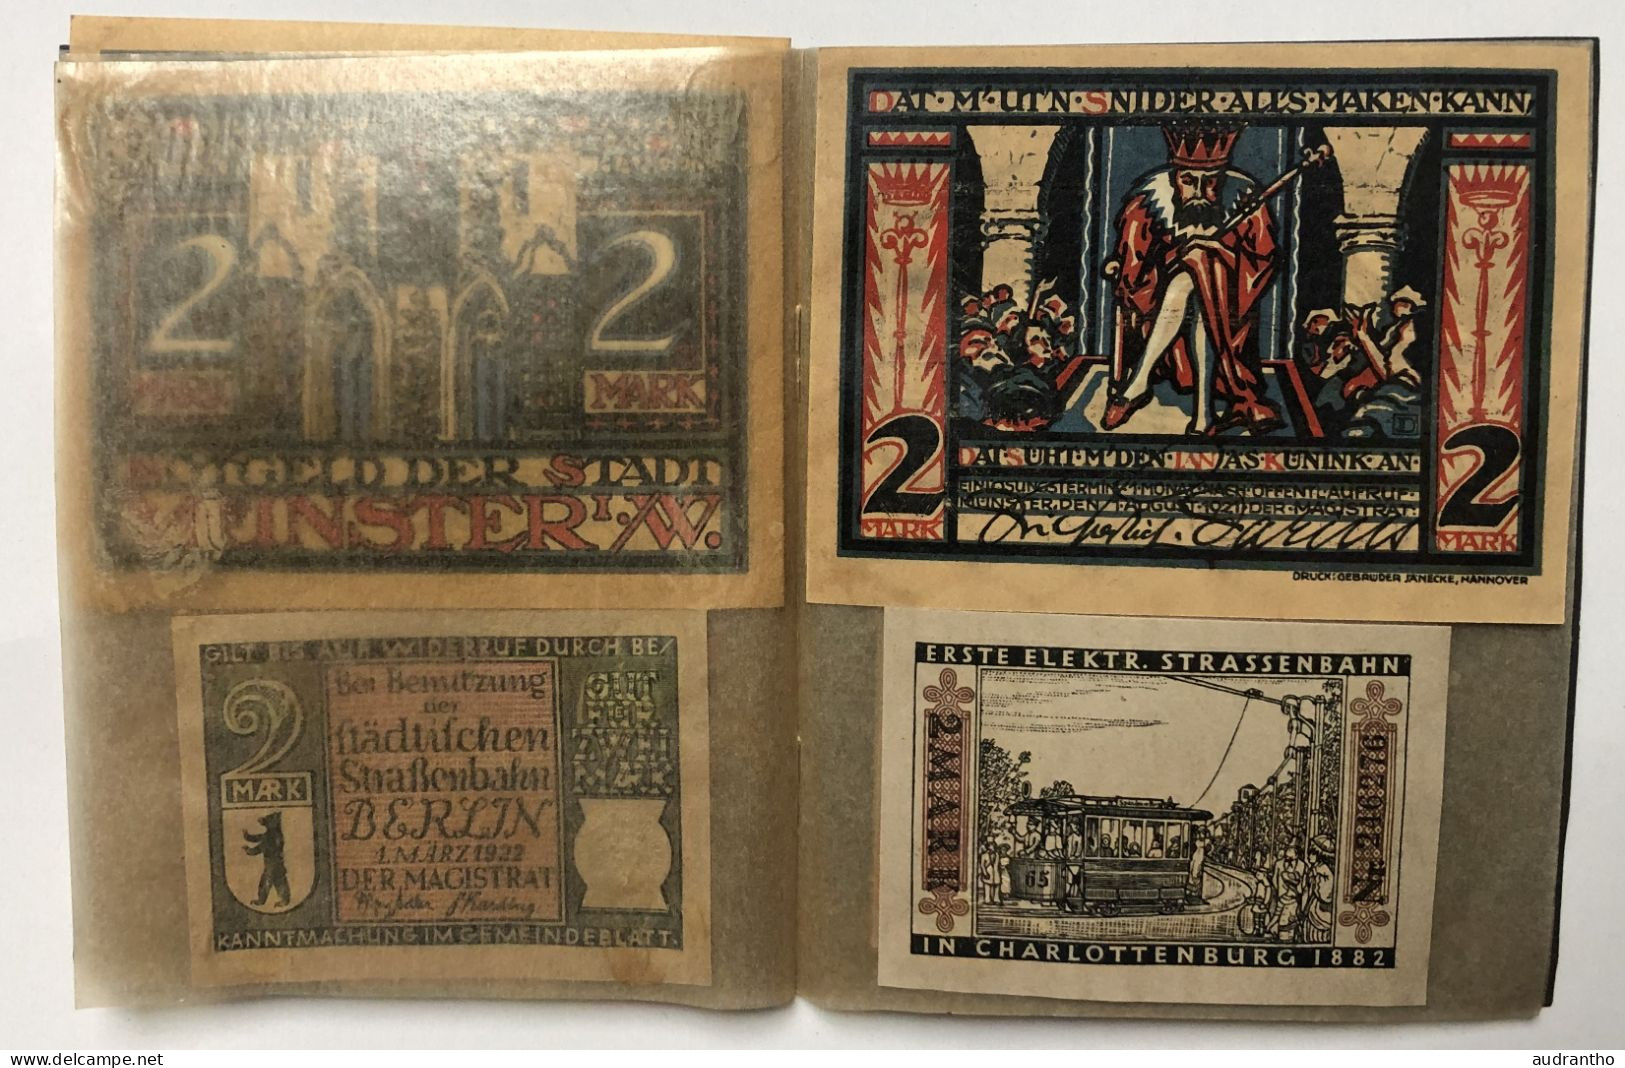 livret rare avec 20 billets allemands Notgeld années 1920 - Munster Oberammergau Berlin - banknote